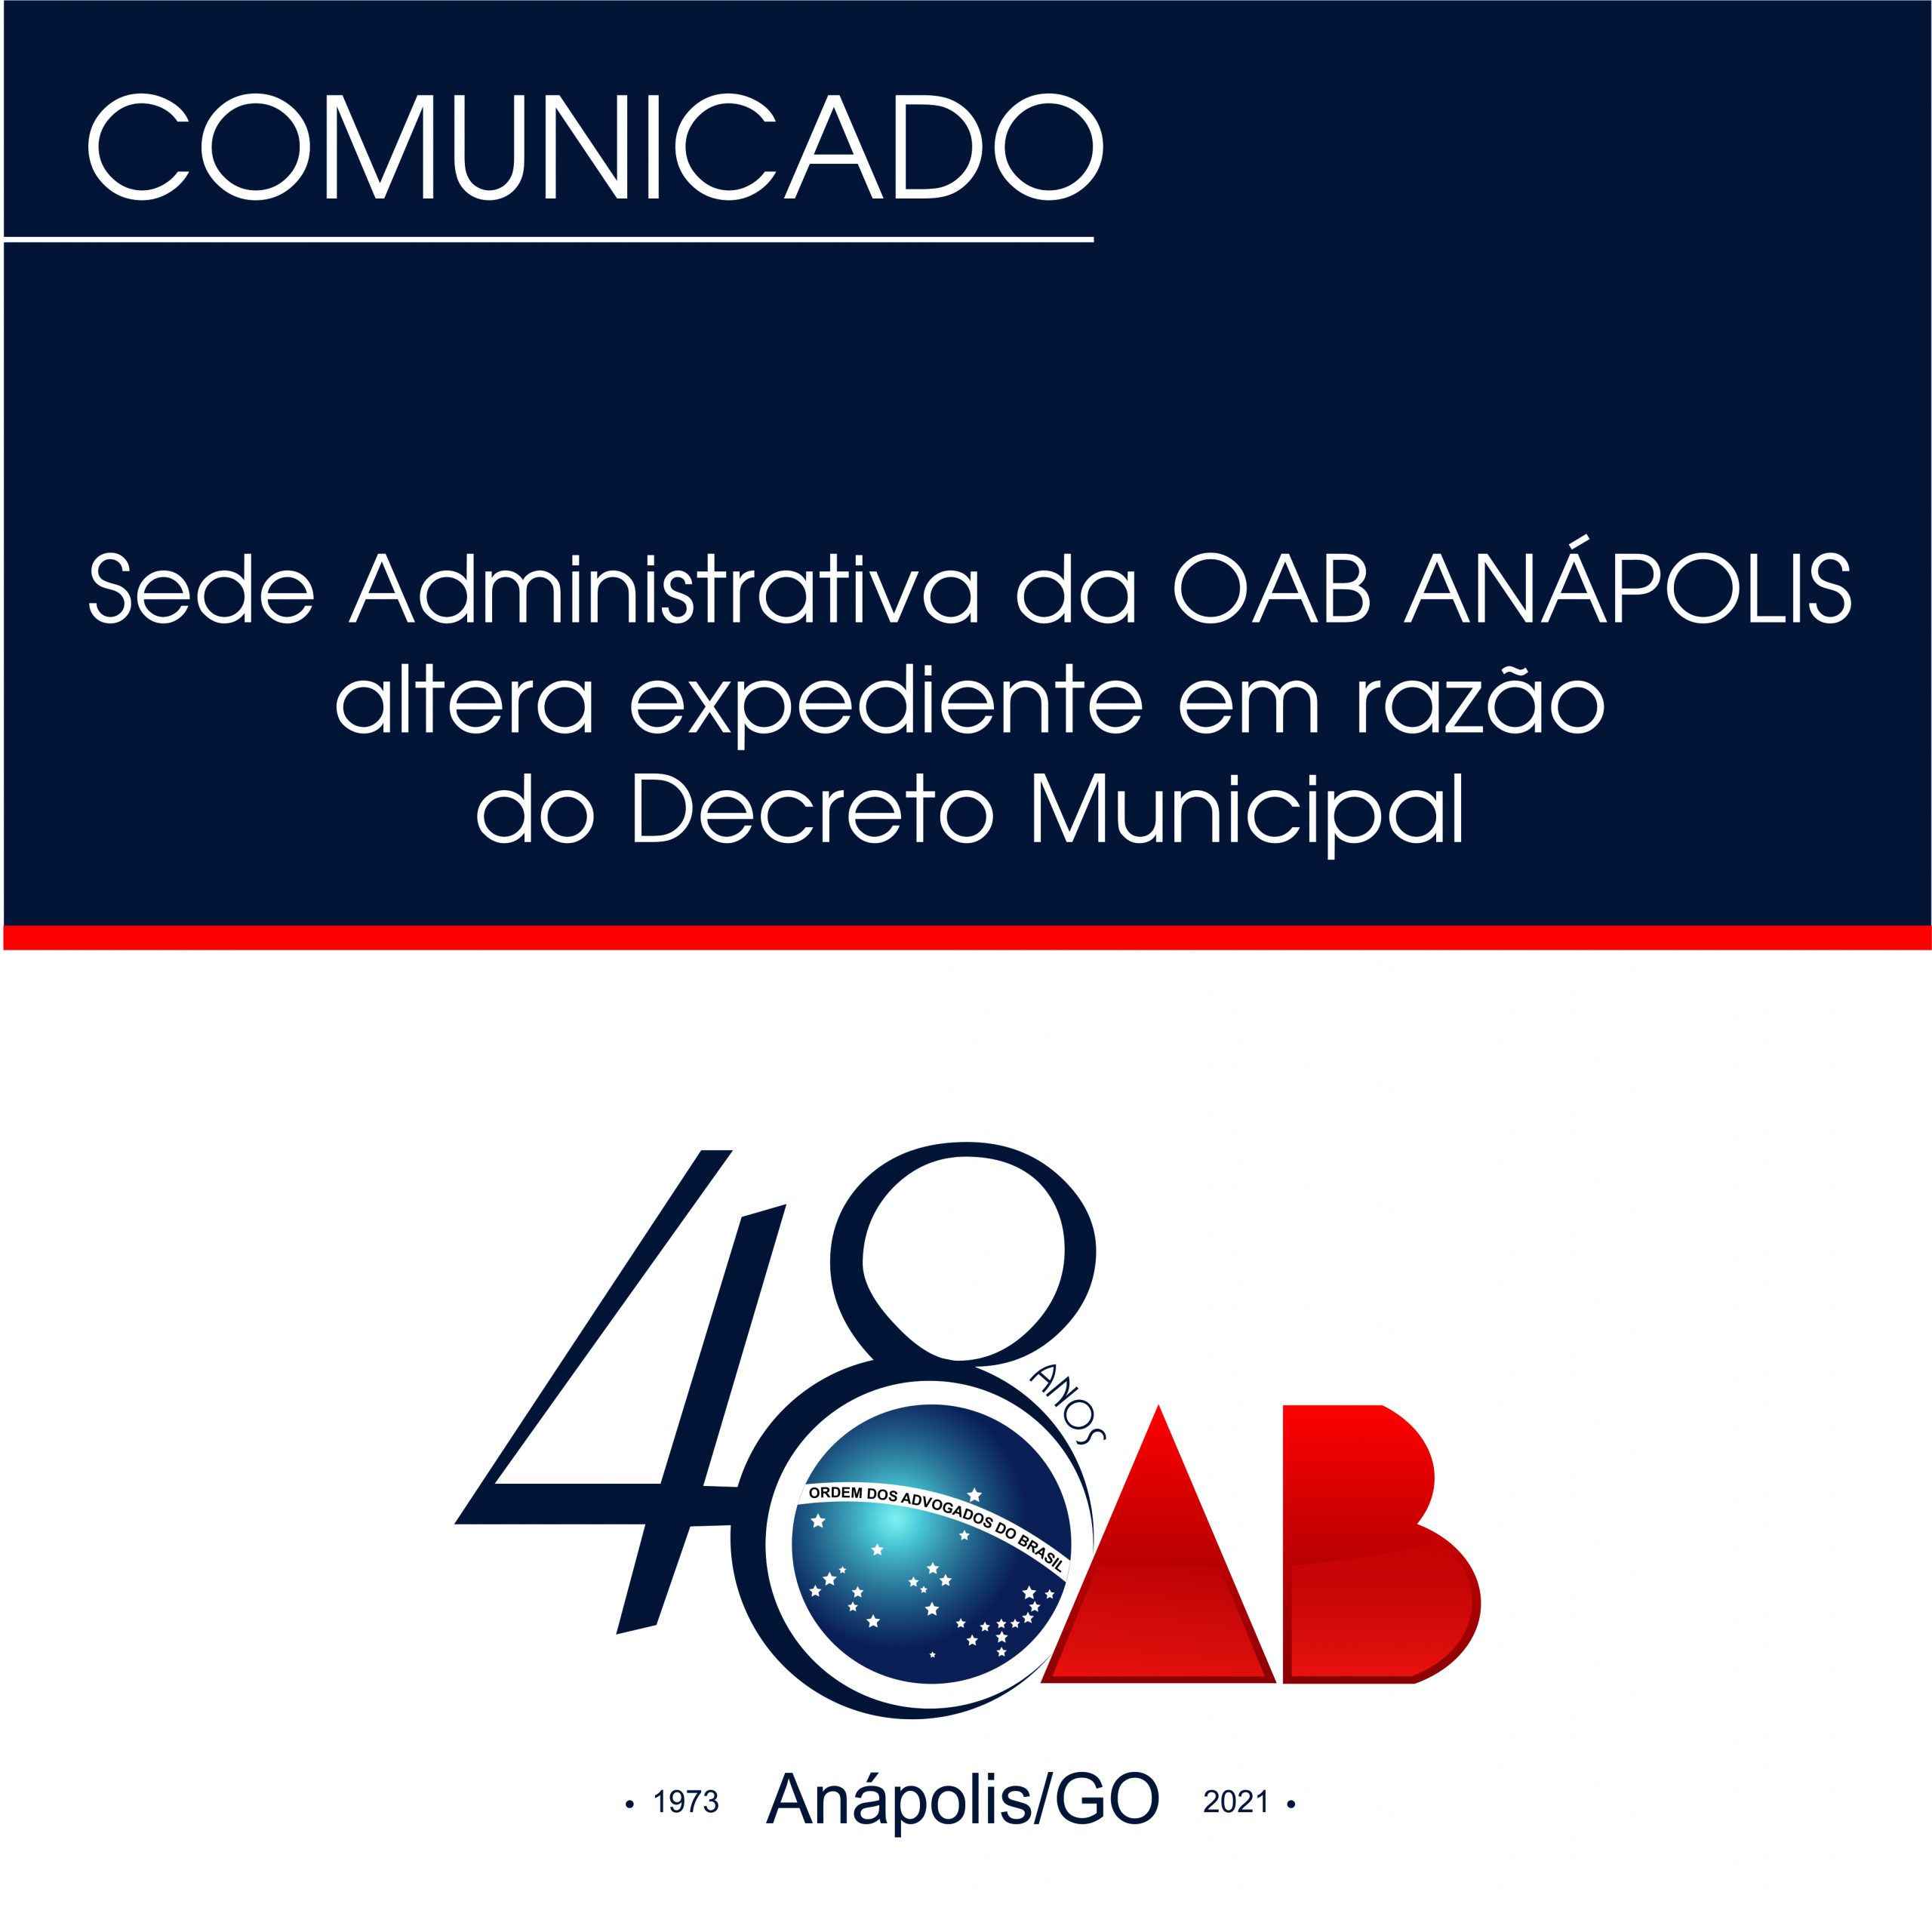 Sede Administrativa da OAB ANÁPOLIS altera expediente em razão  do Decreto Municipal